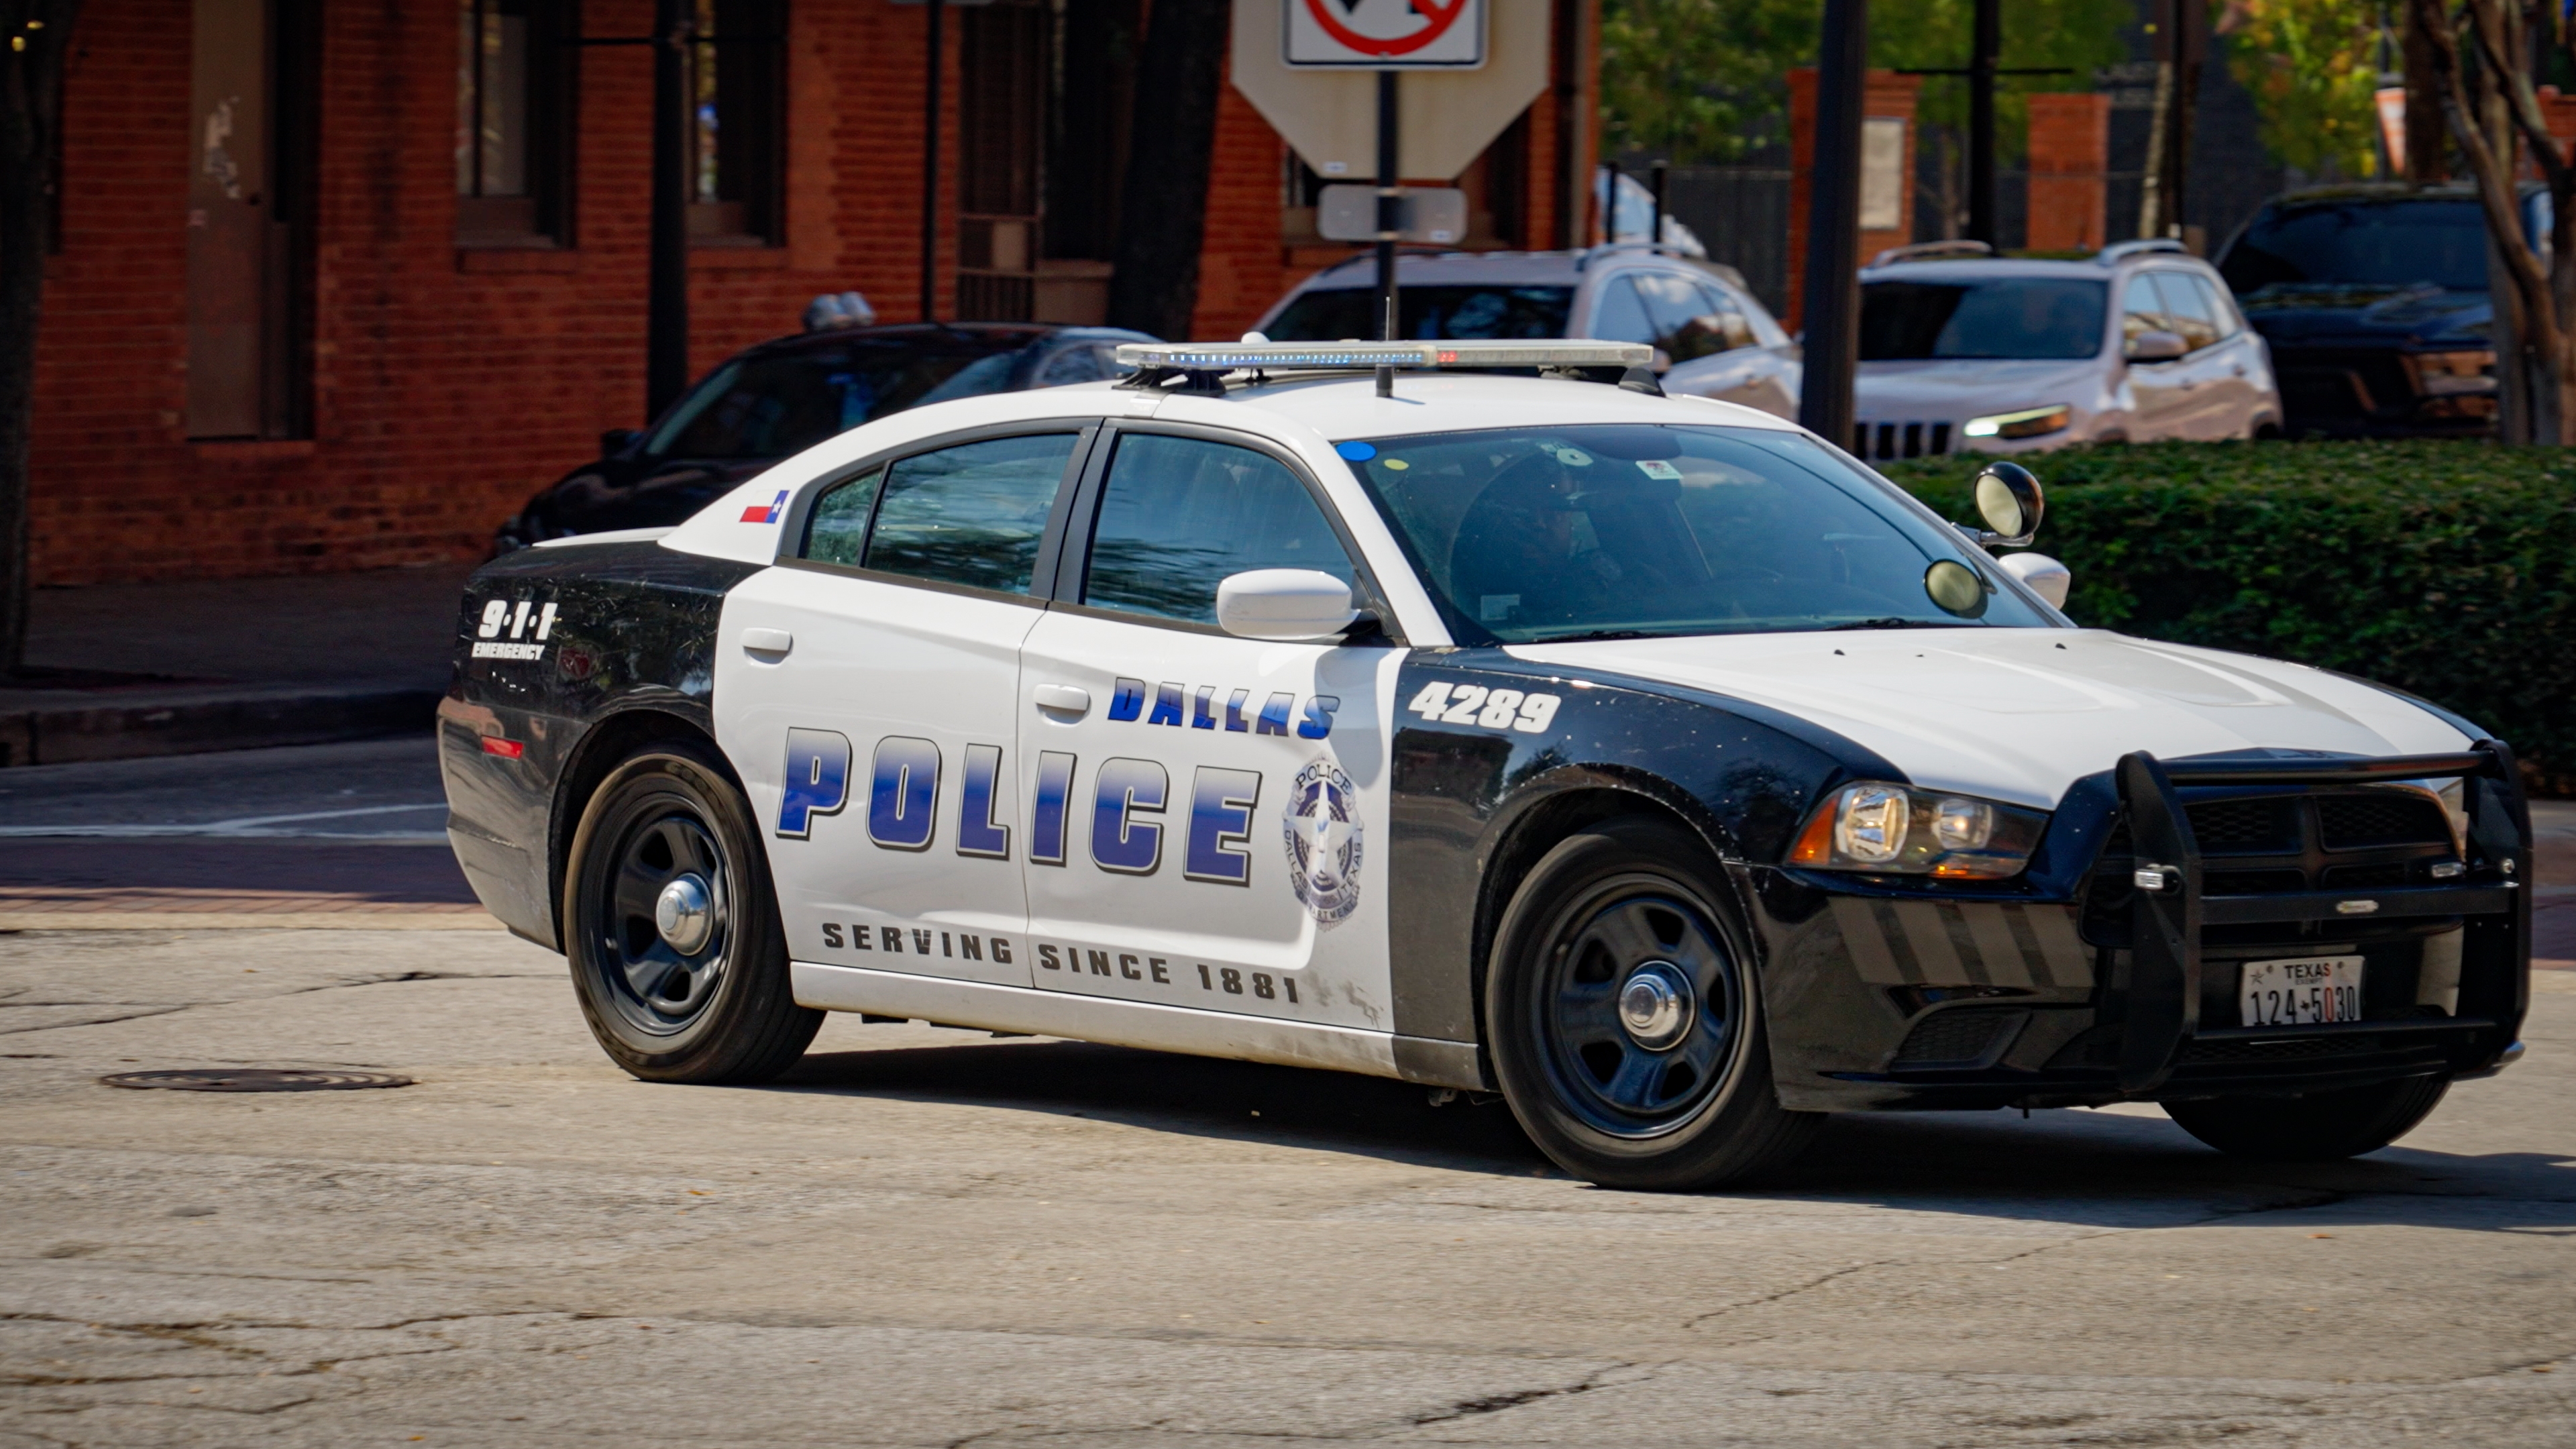 Automóvil de la Policía de Dallas en servicio | Fuente: Shutterstock